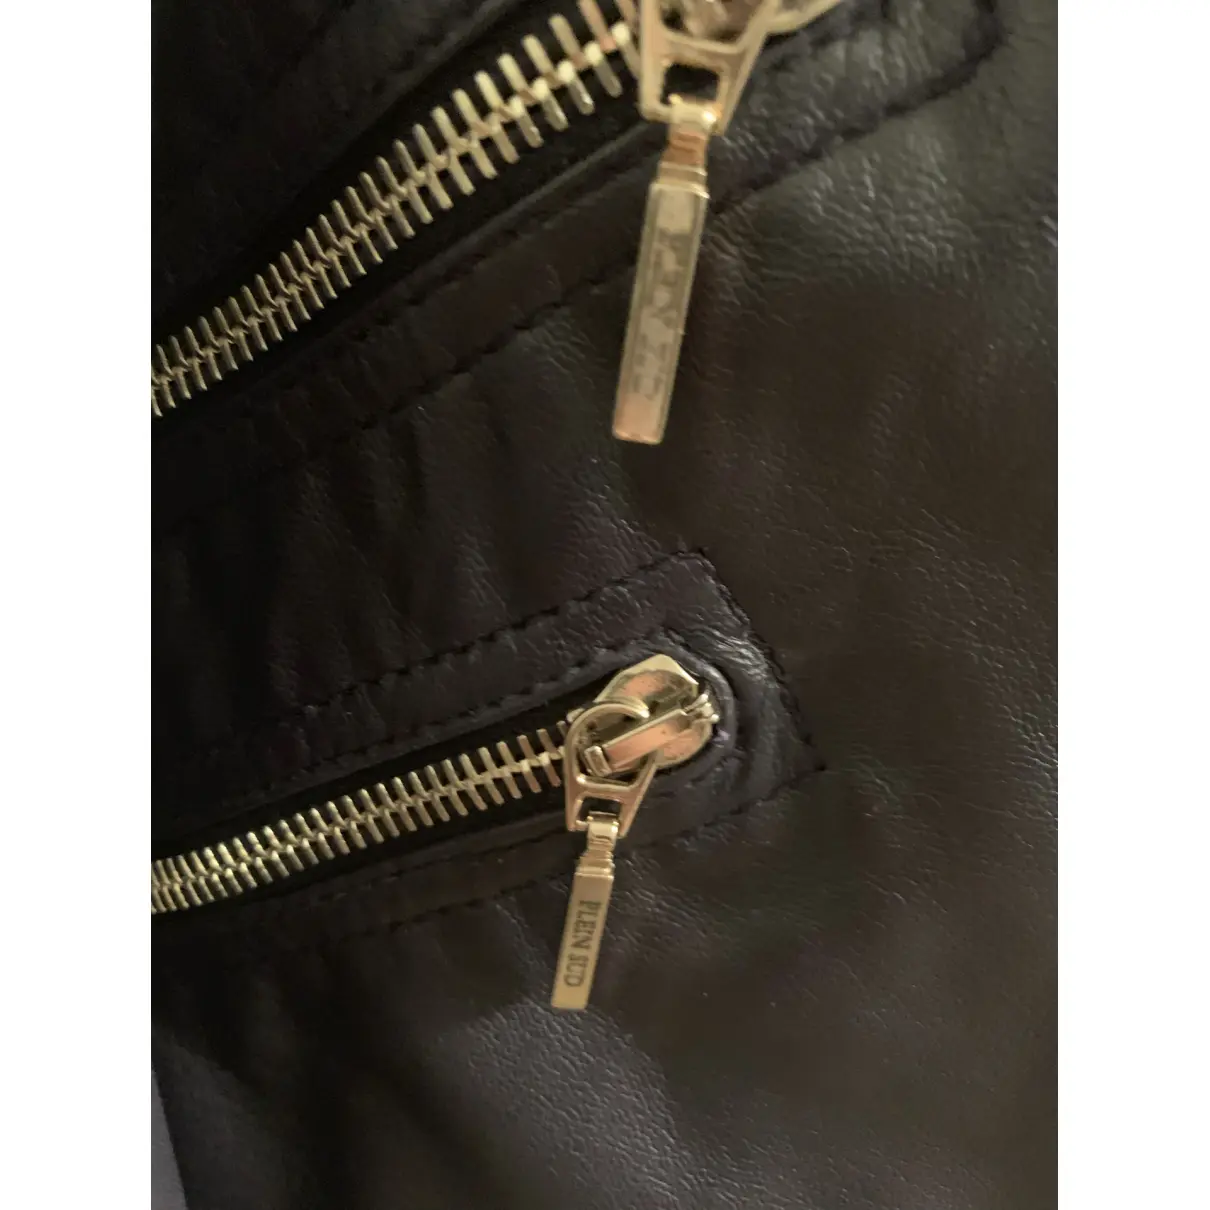 Leather jacket Plein Sud